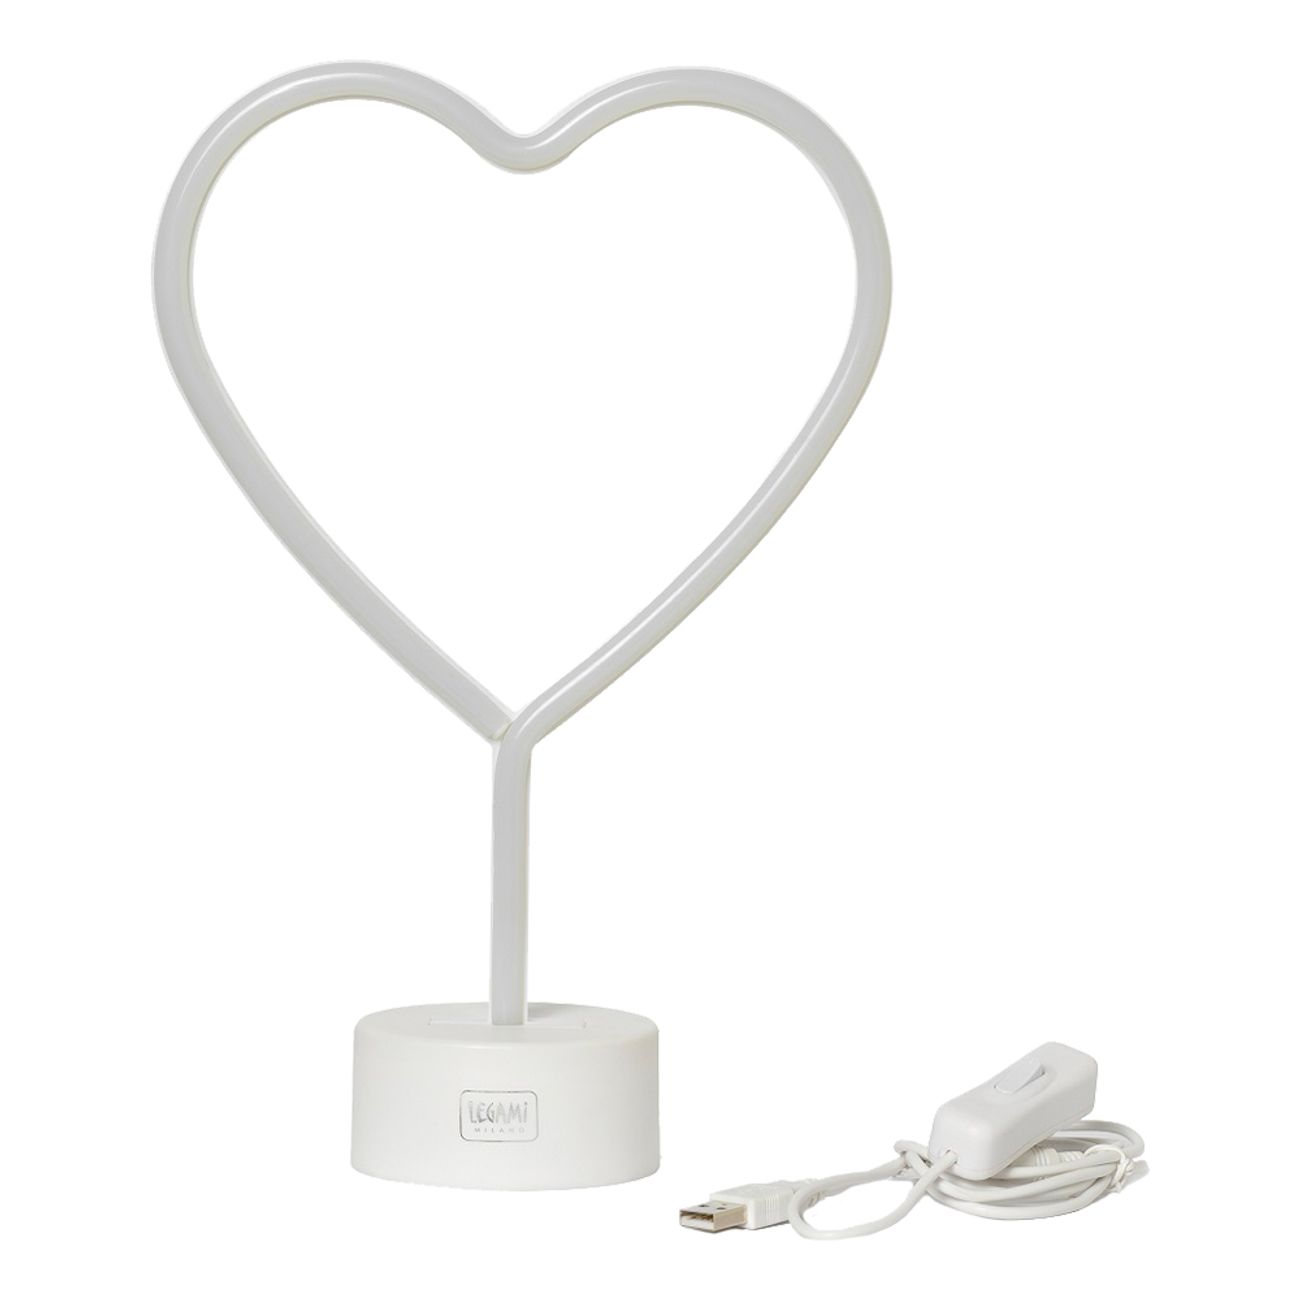 LED-Lampa Hjärta med Neon-effekt